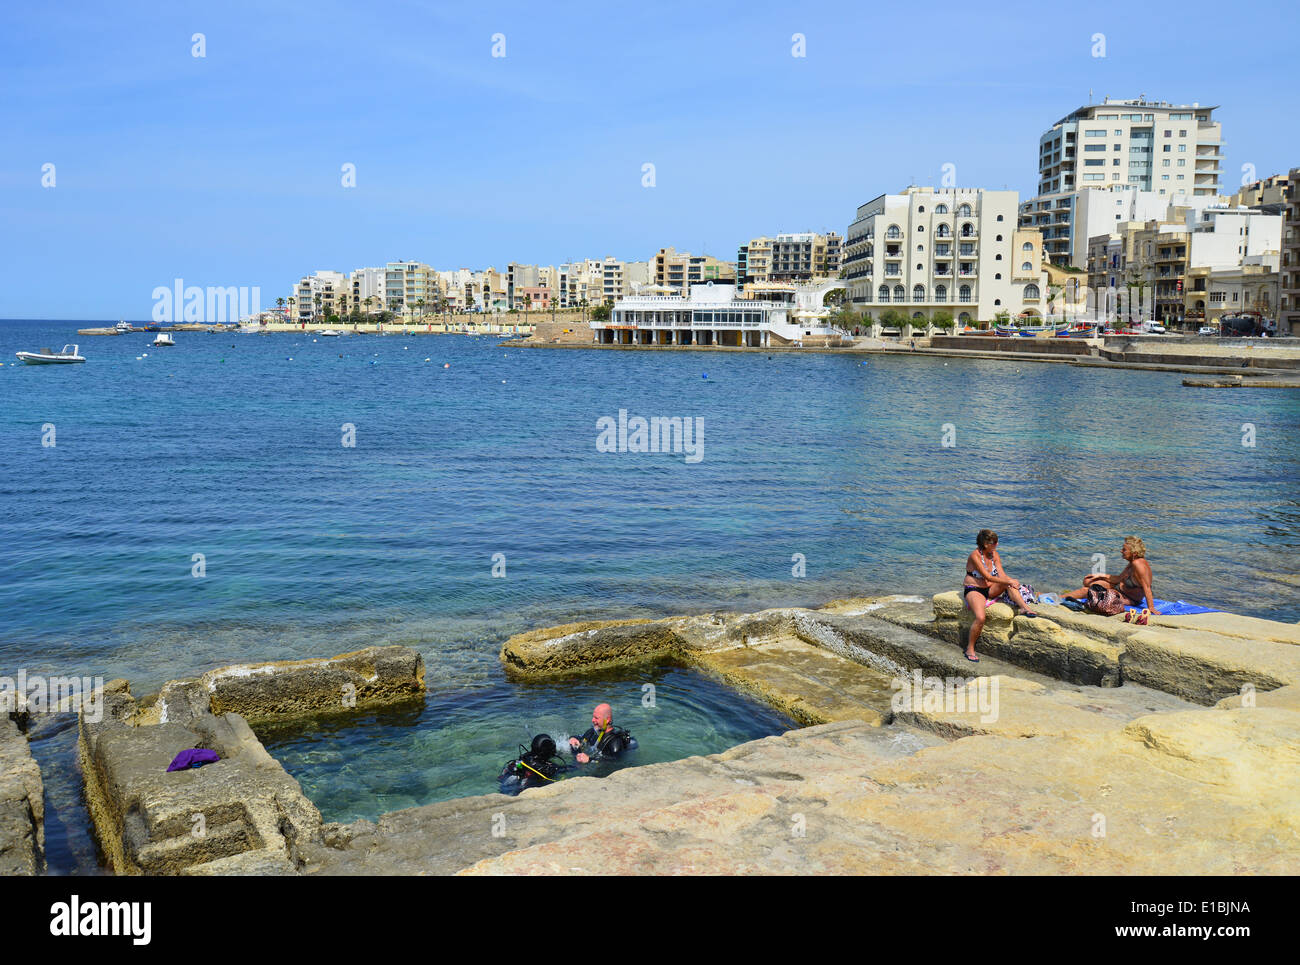 Estran vue montrant l'echelle piscines, Saint Paul's Bay (San Pawl il-baħar), District Nord, République de Malte Banque D'Images